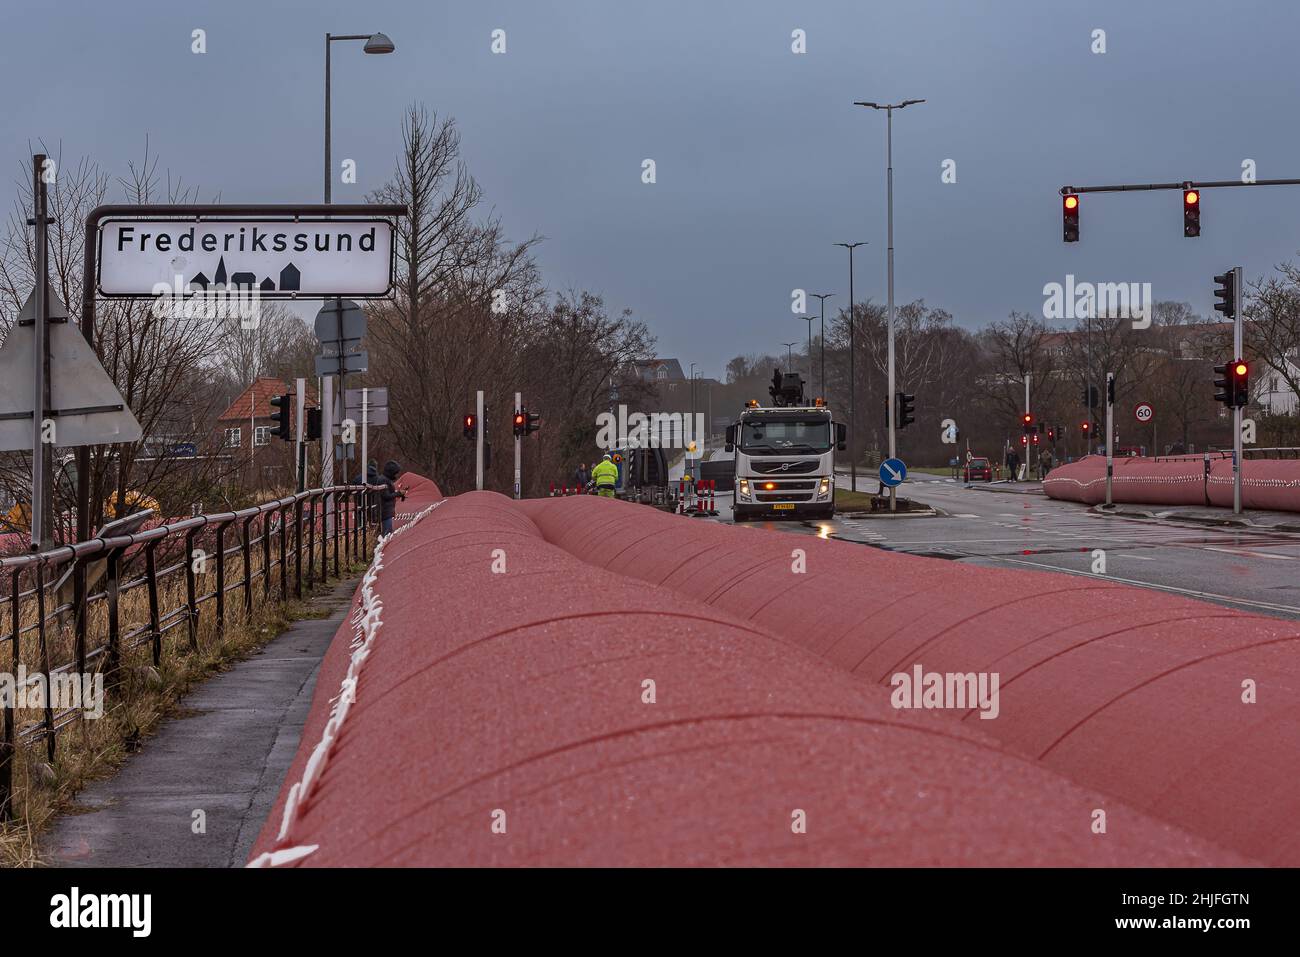 Grand tube d'eau rose pour empêcher la tempête Malik à Frederikssund d'inonder la ville de Fredrikssund, Danemark, 29 janvier 2022 Banque D'Images